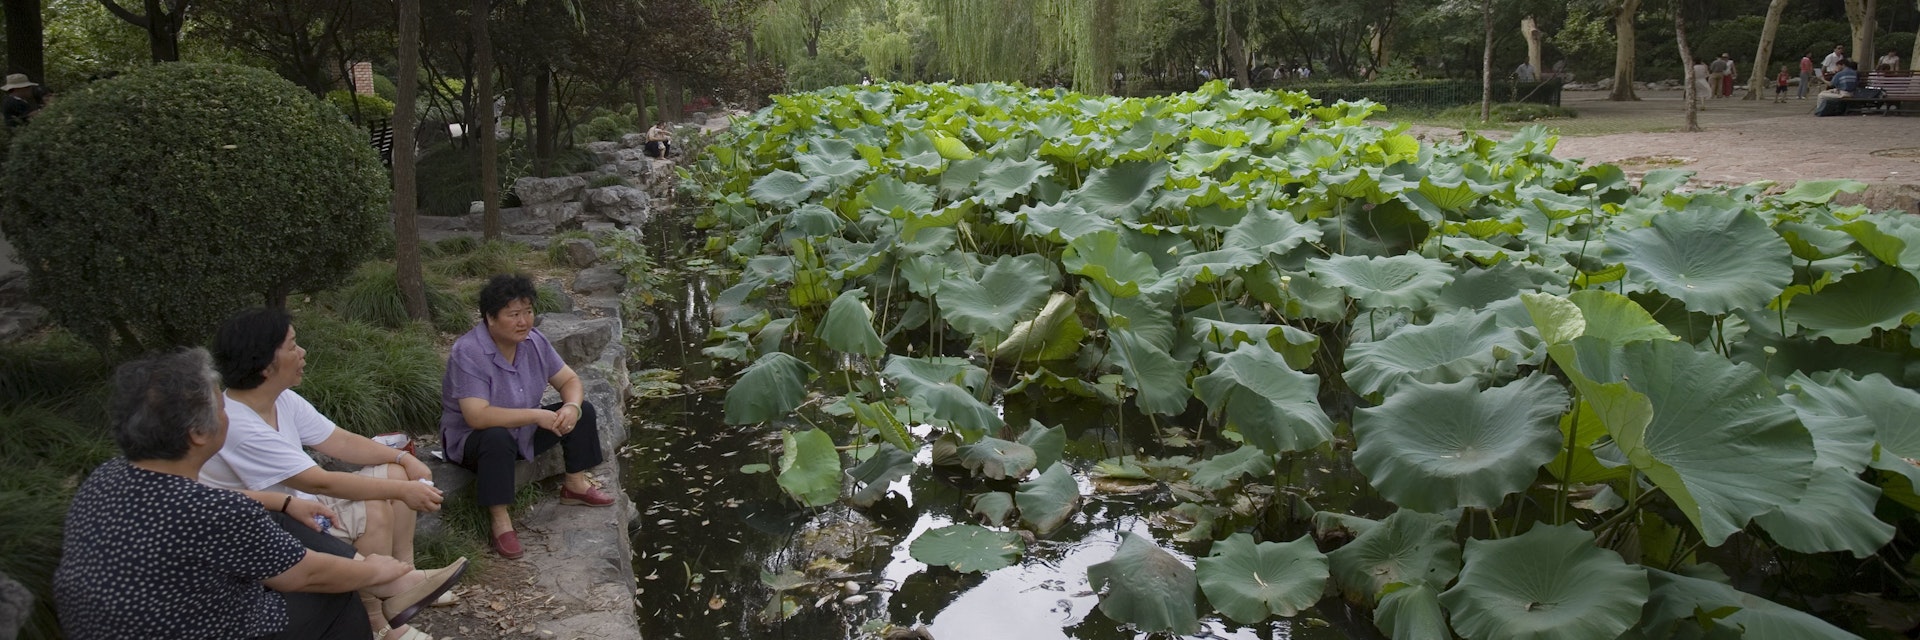 Relaxing beside Lotus pond, Lu Xun Park, Hongqiao.